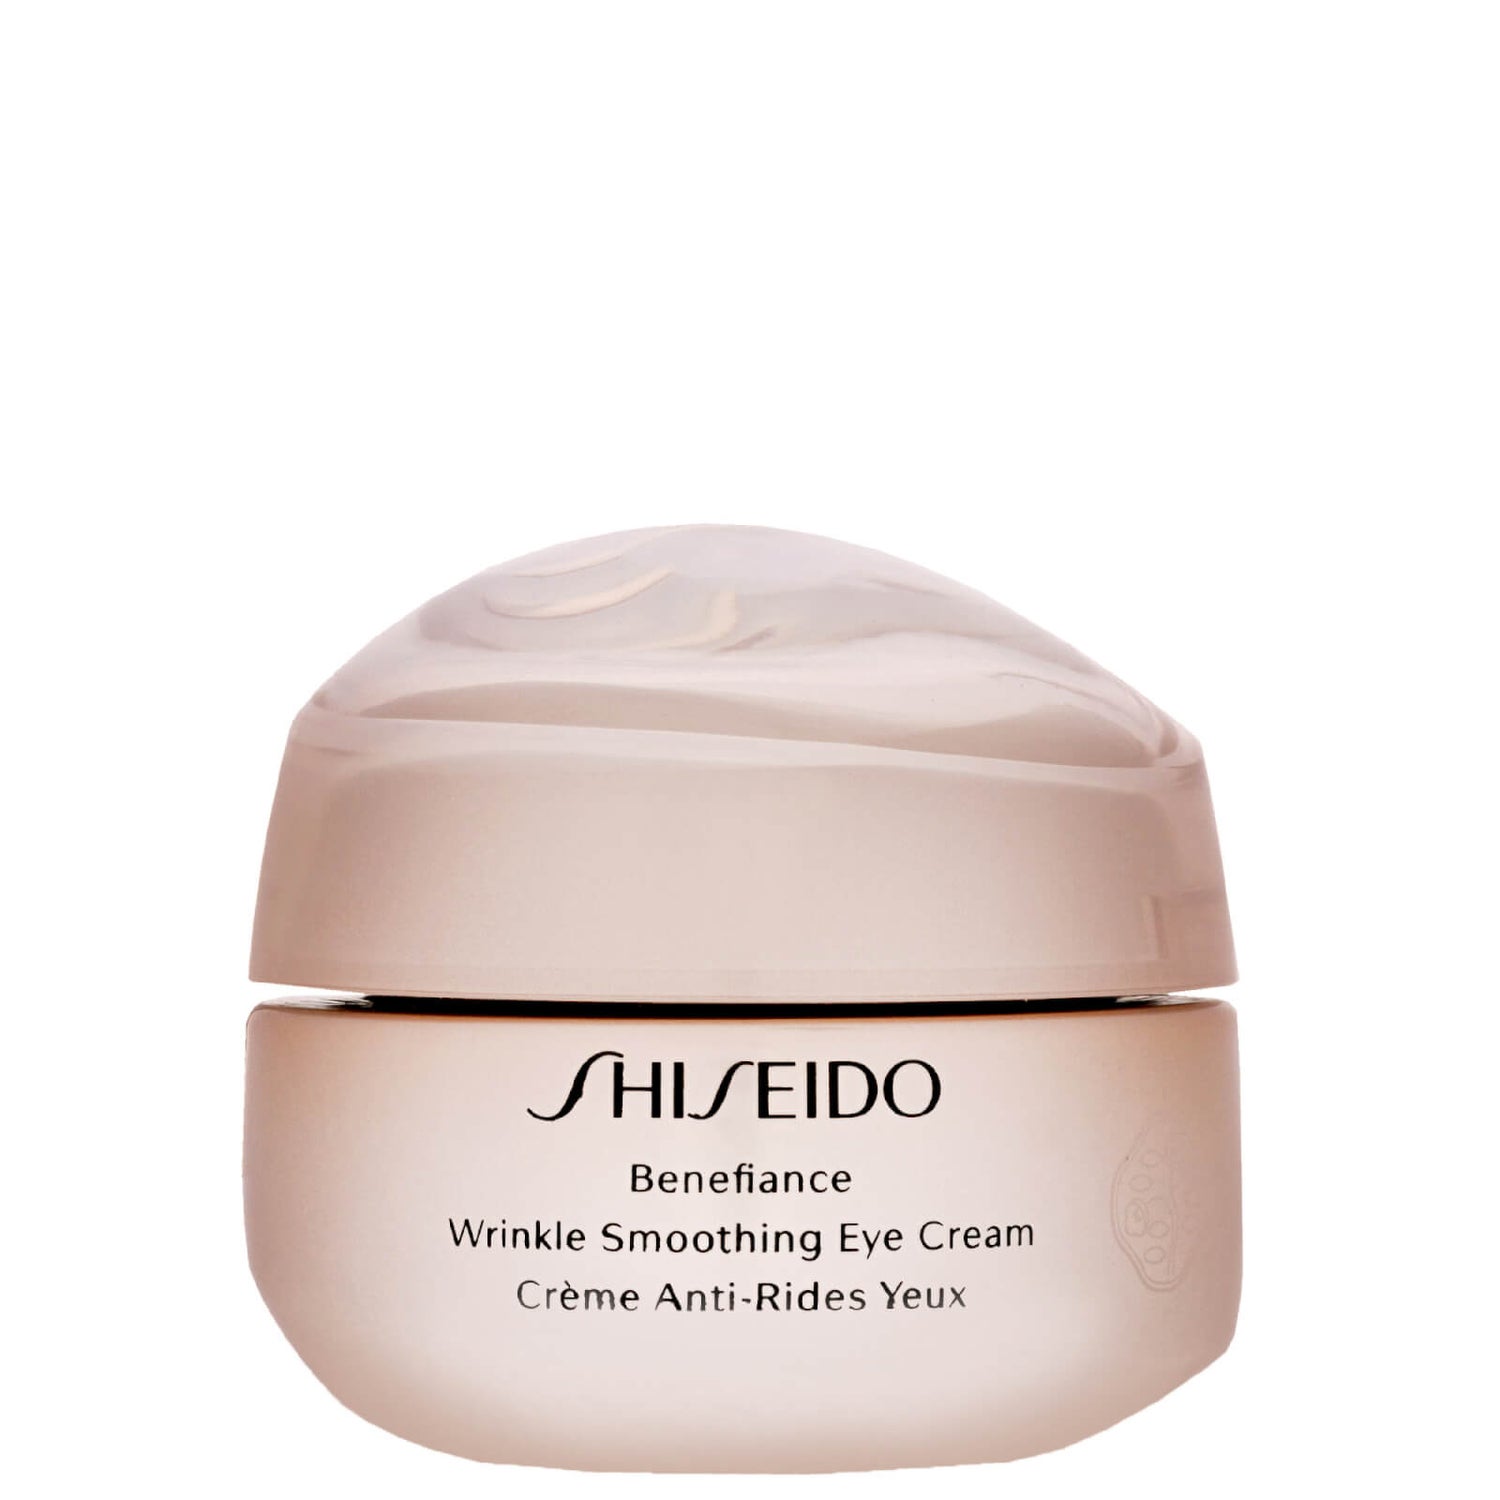 Shiseido Benefiance Eye Cream. Shiseido Wrinkle Smoothing Cream. Shiseido Anti Wrinkle Cream. Shiseido Benefiance Eye Cream купить.